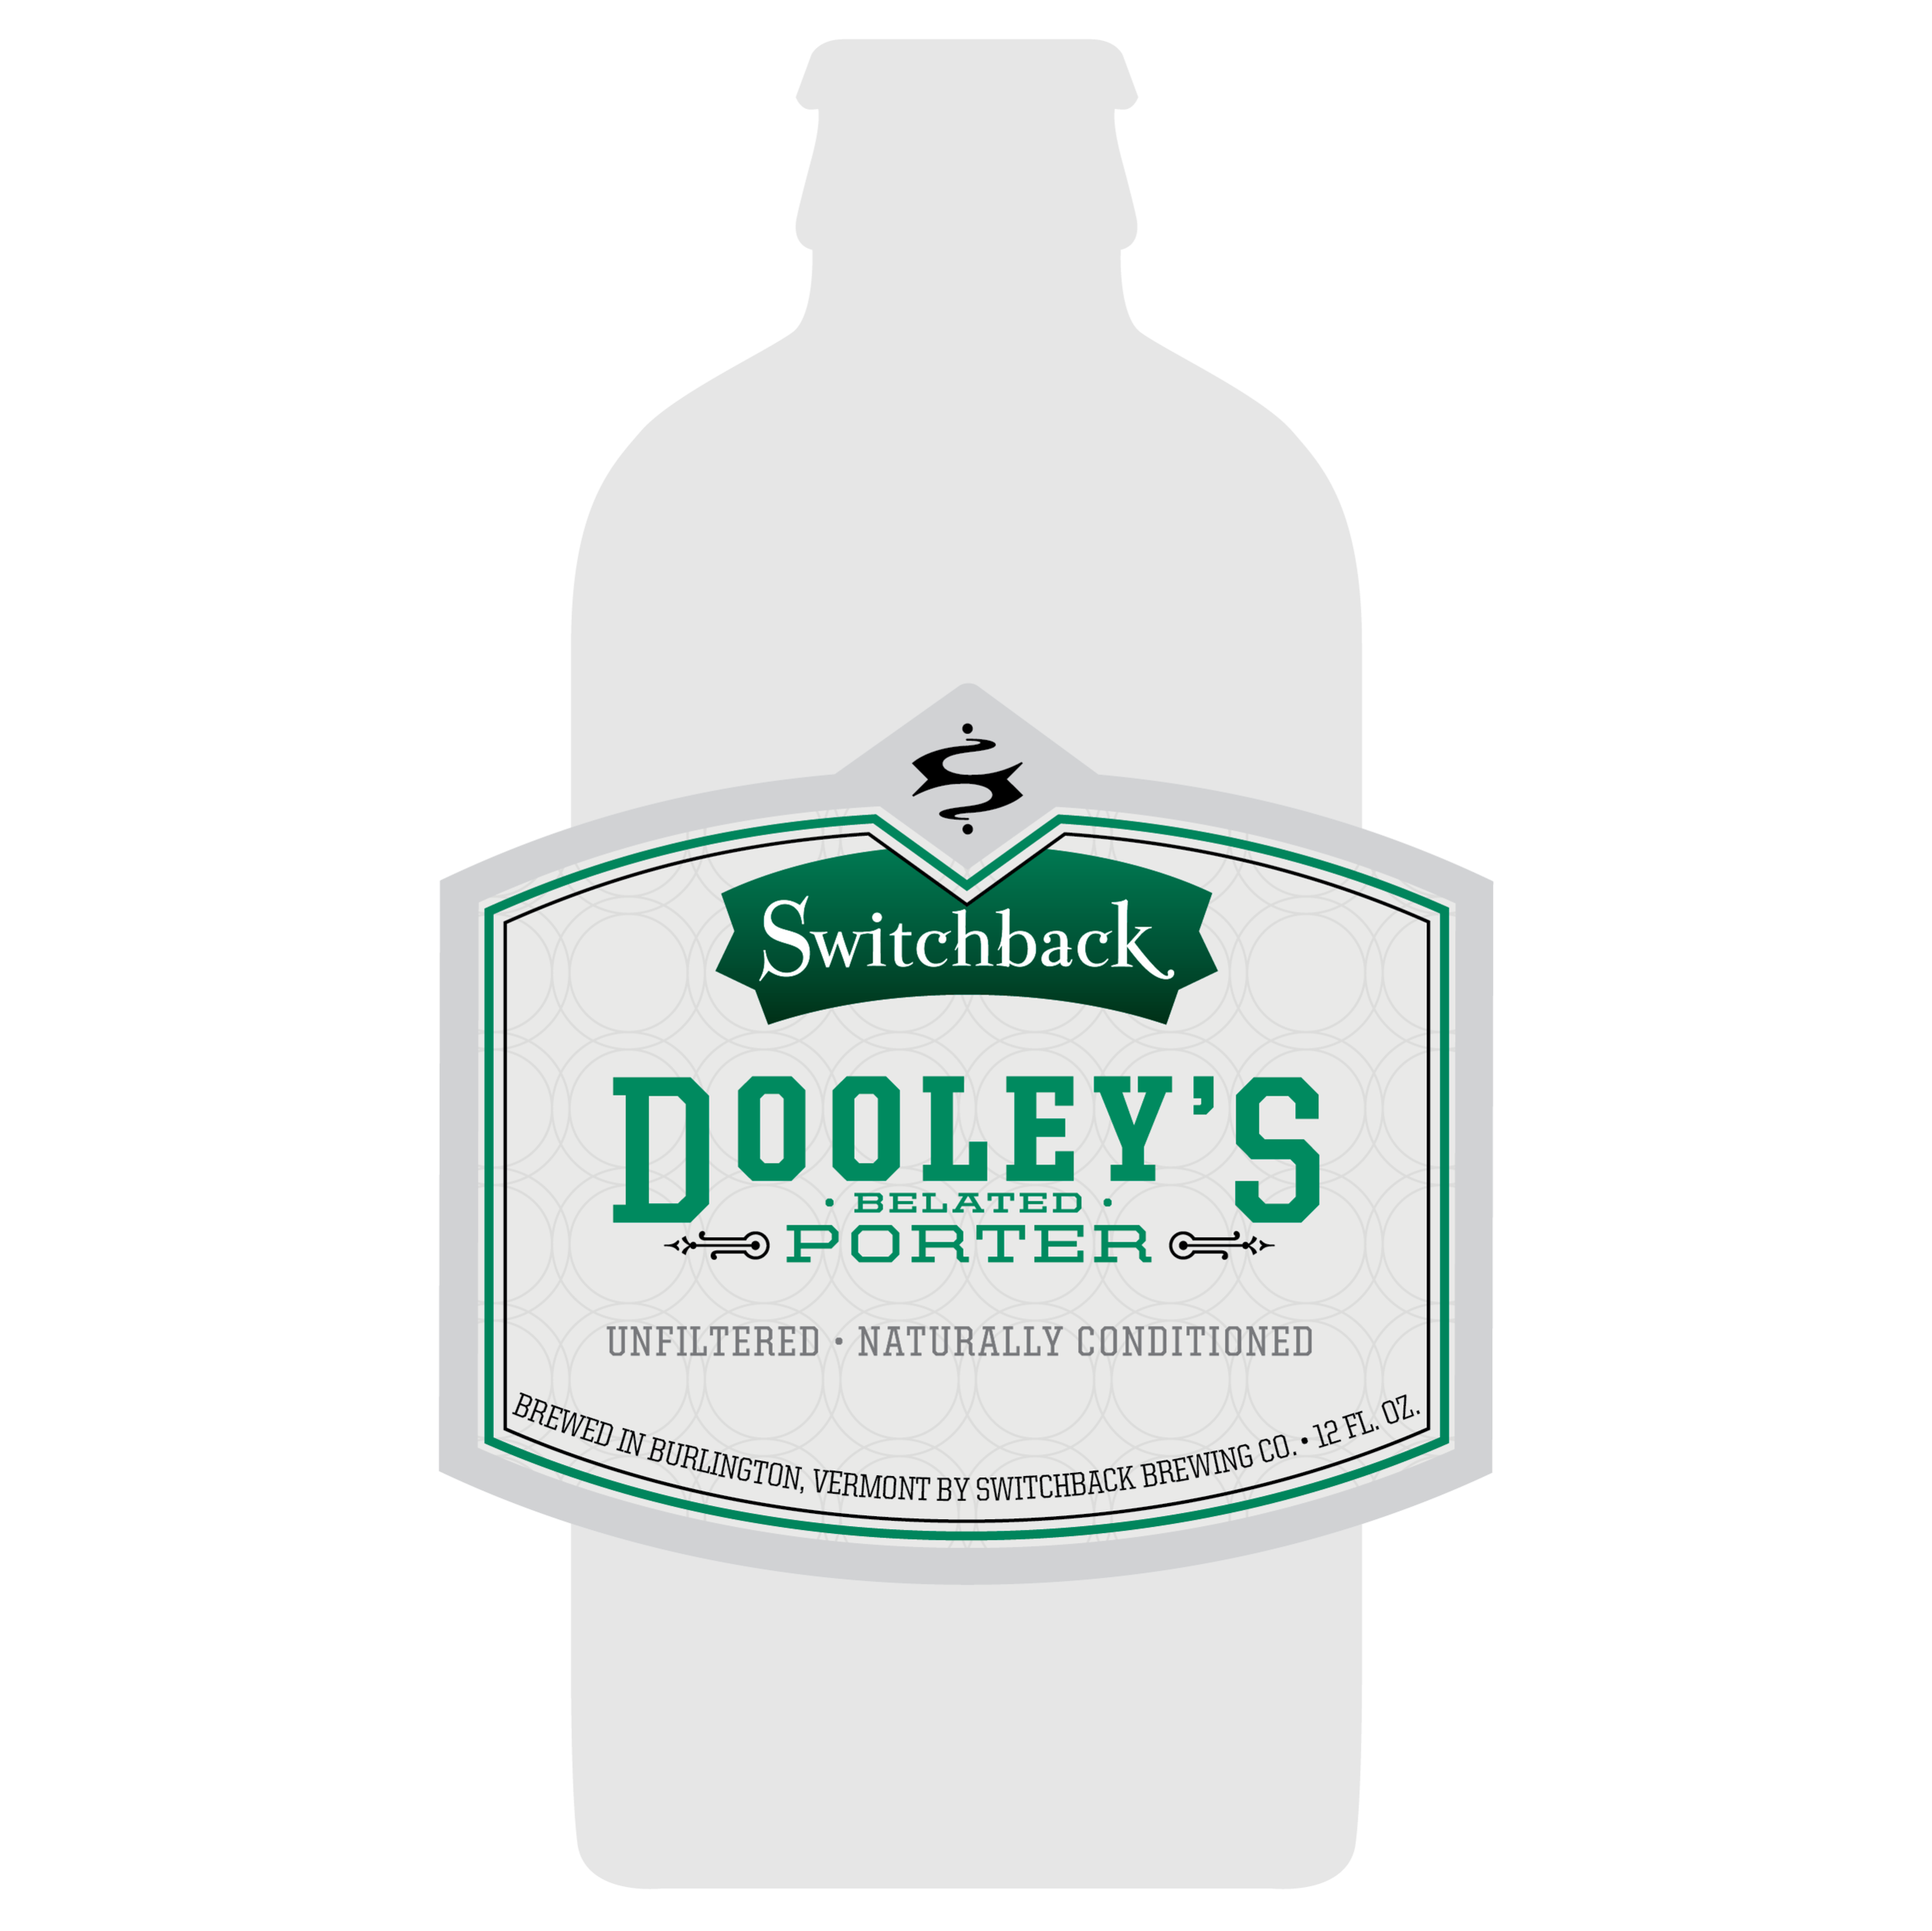 Interrobang's 12oz bottle label design for Switchback Dooley's Belated Porter